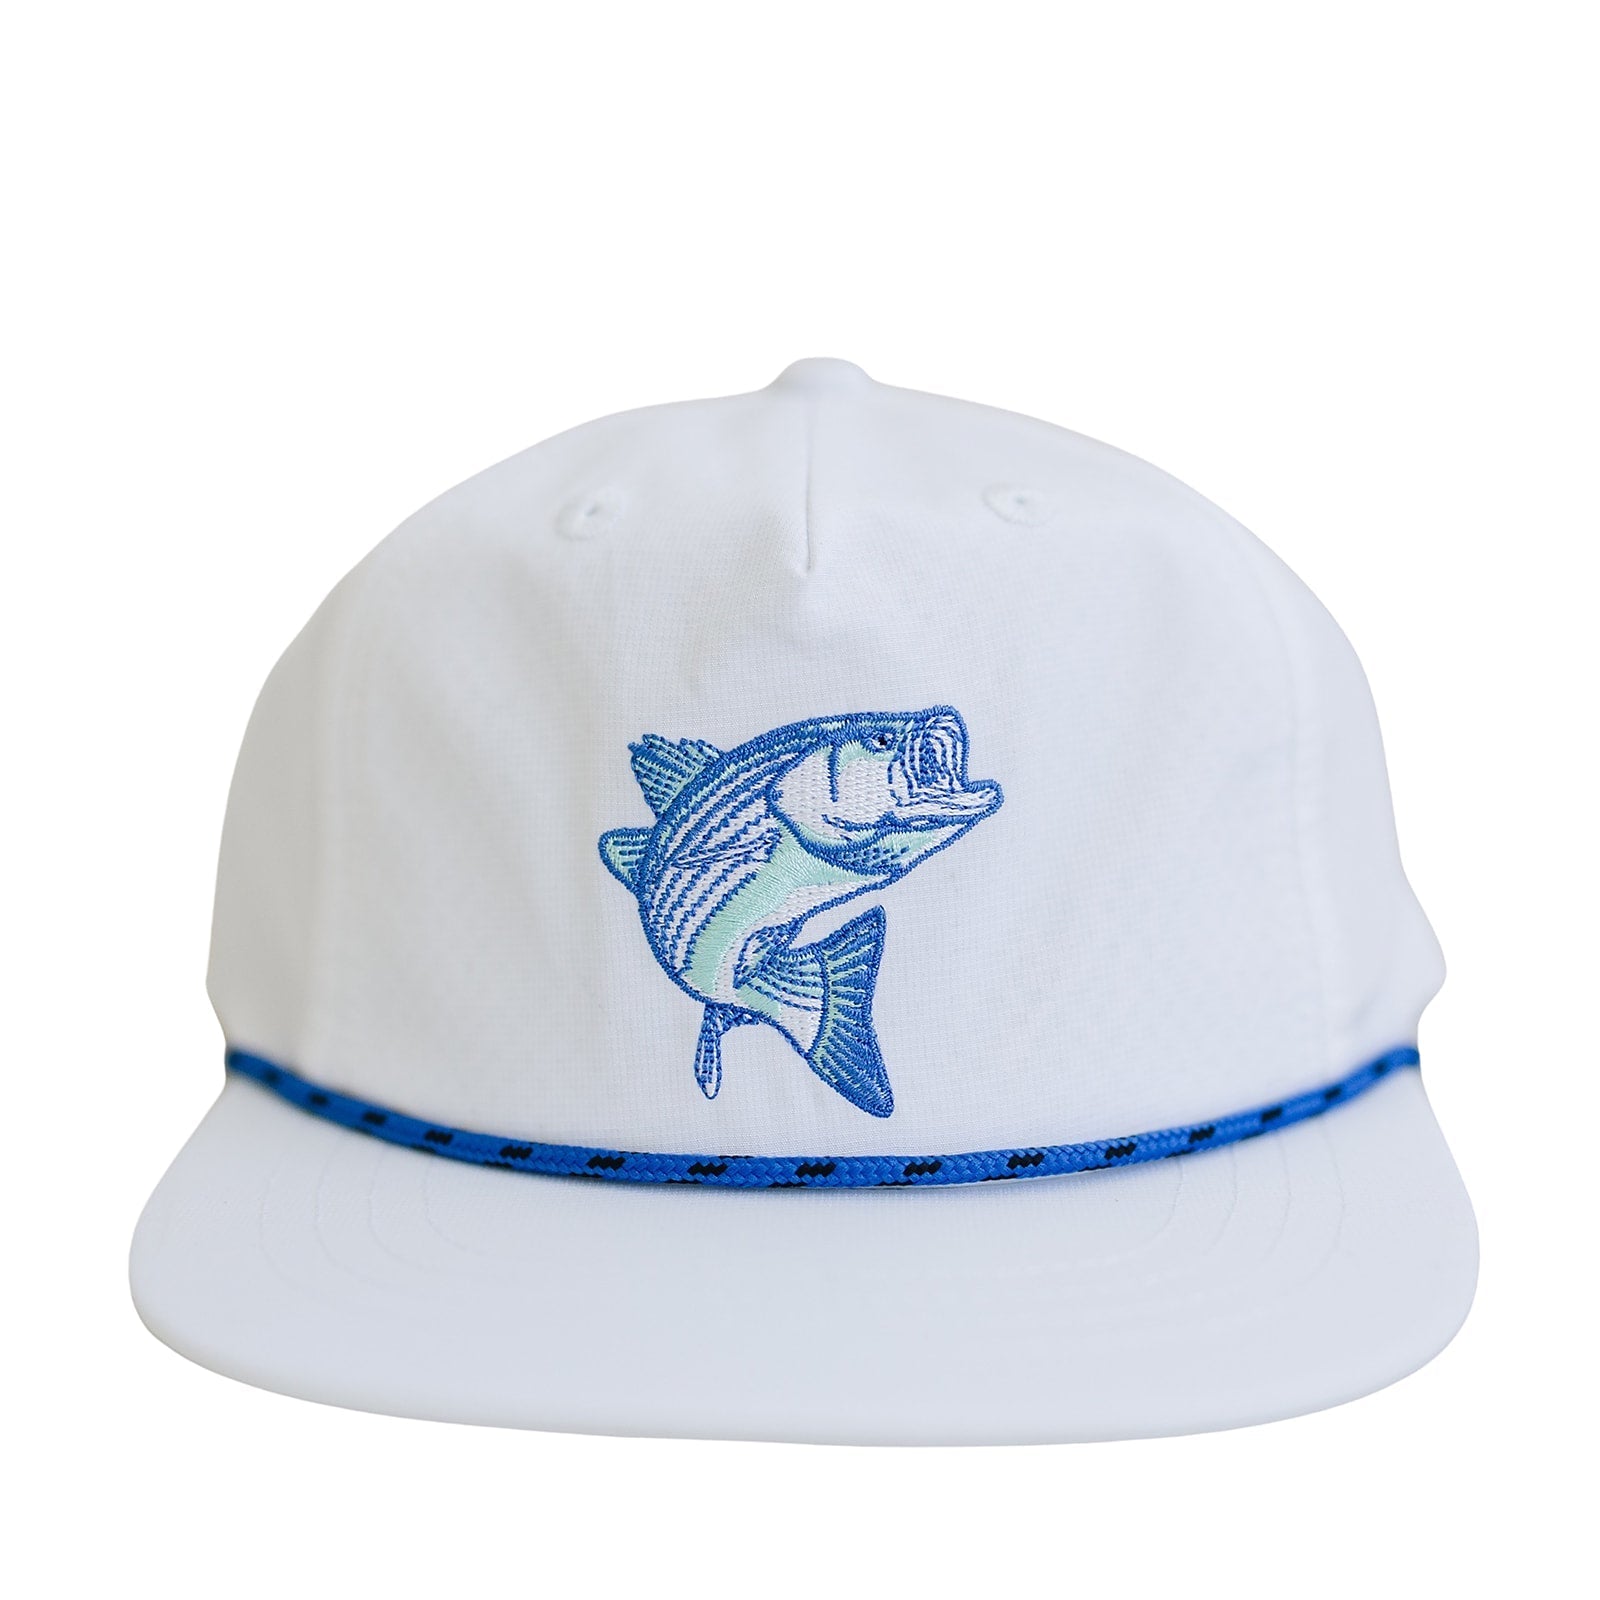 Bass Pro White Flat Brim Hat